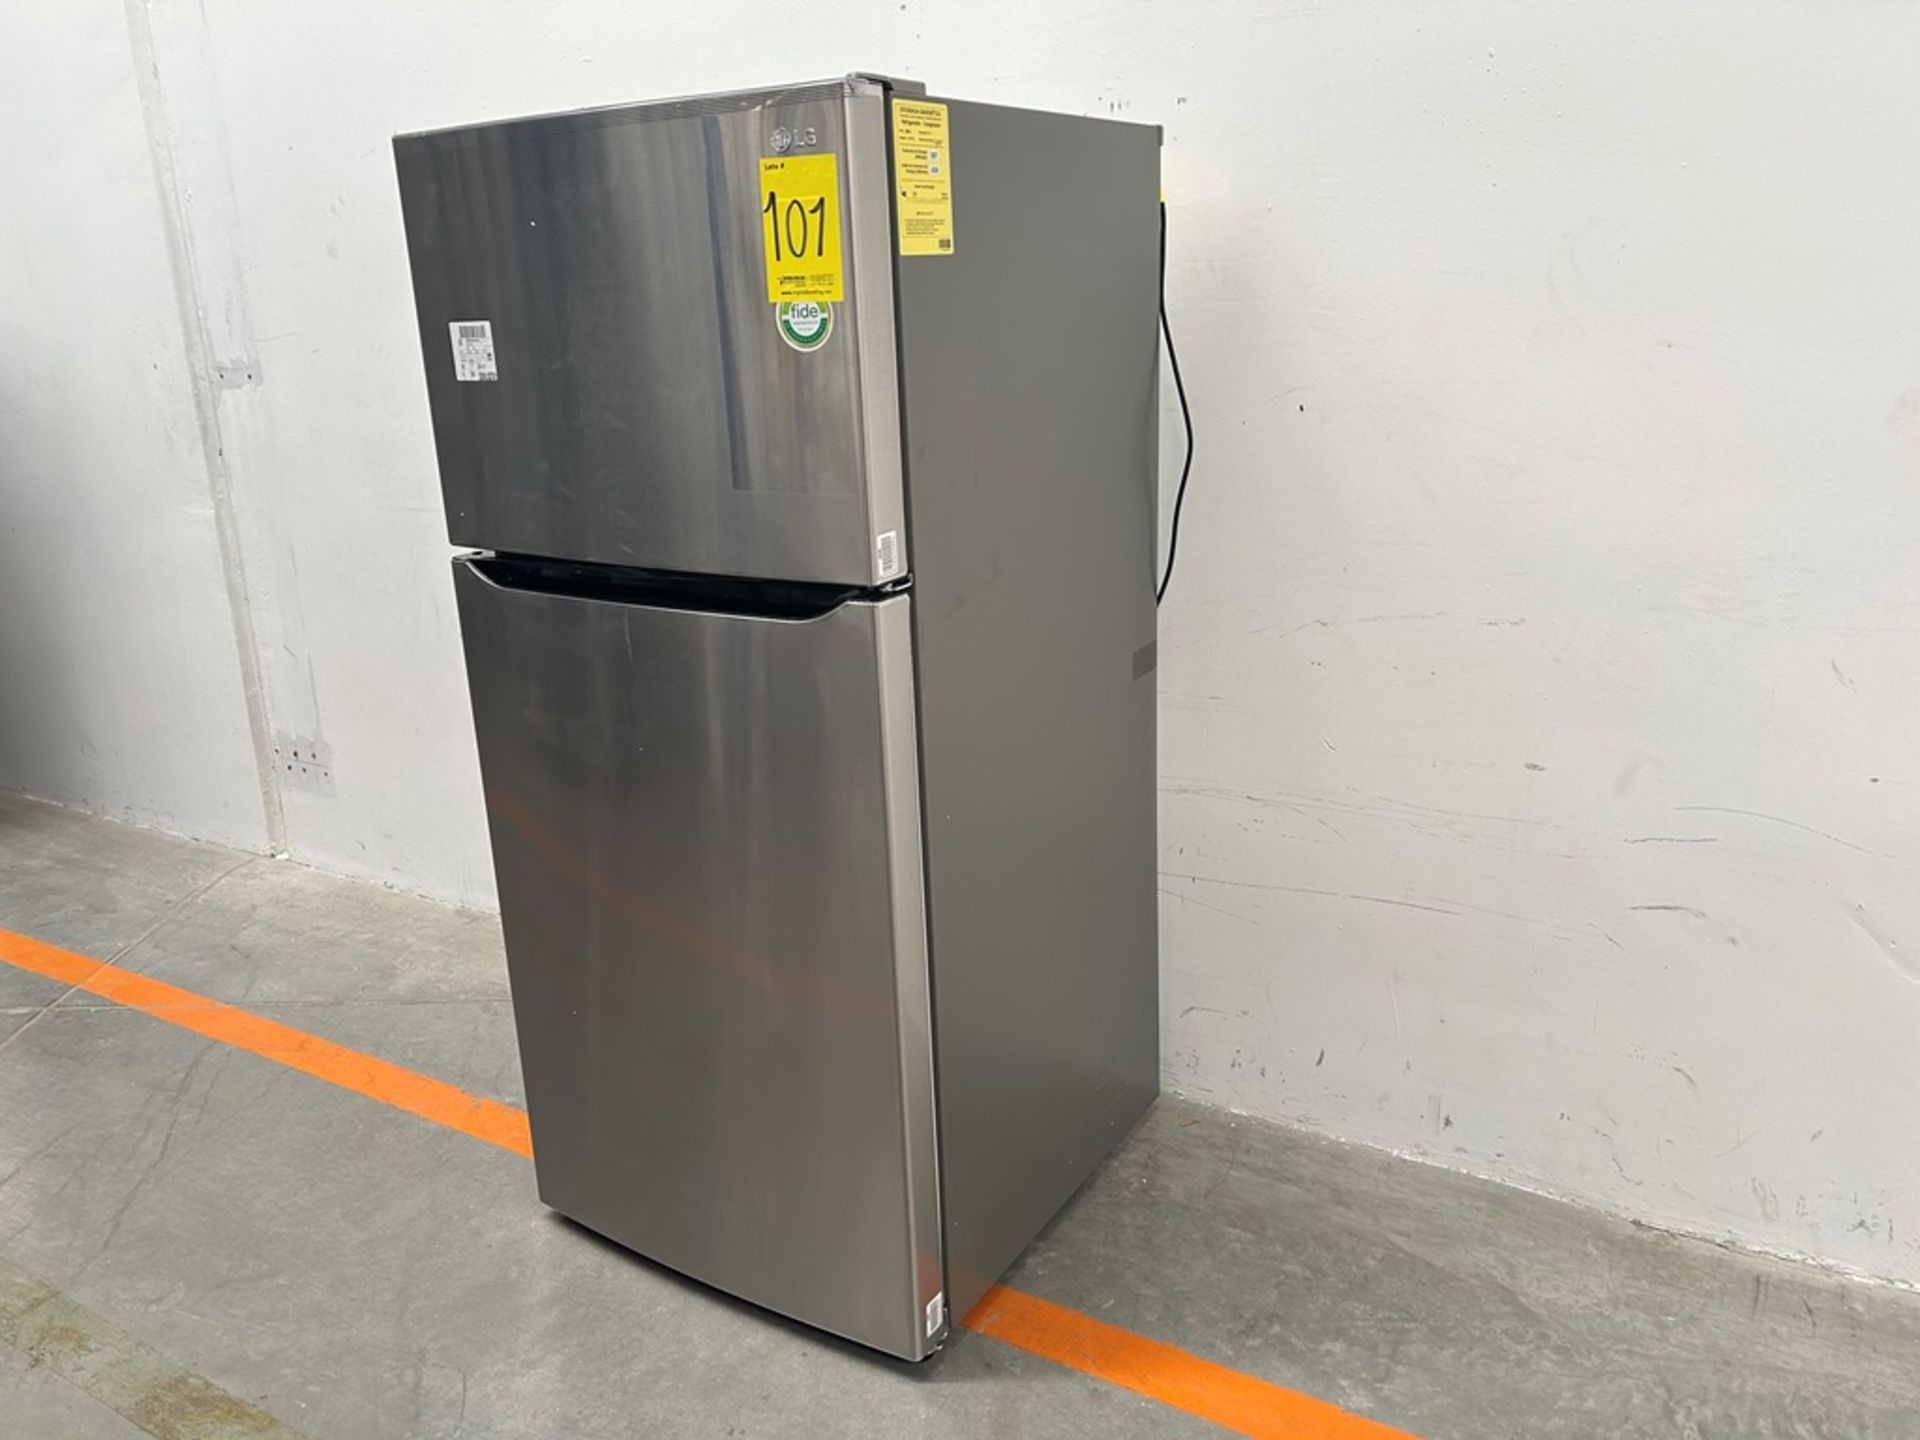 (NUEVO) Refrigerador Marca LG, Modelo LT57BPSX, Serie 1Q440, Color GRIS - Image 3 of 11